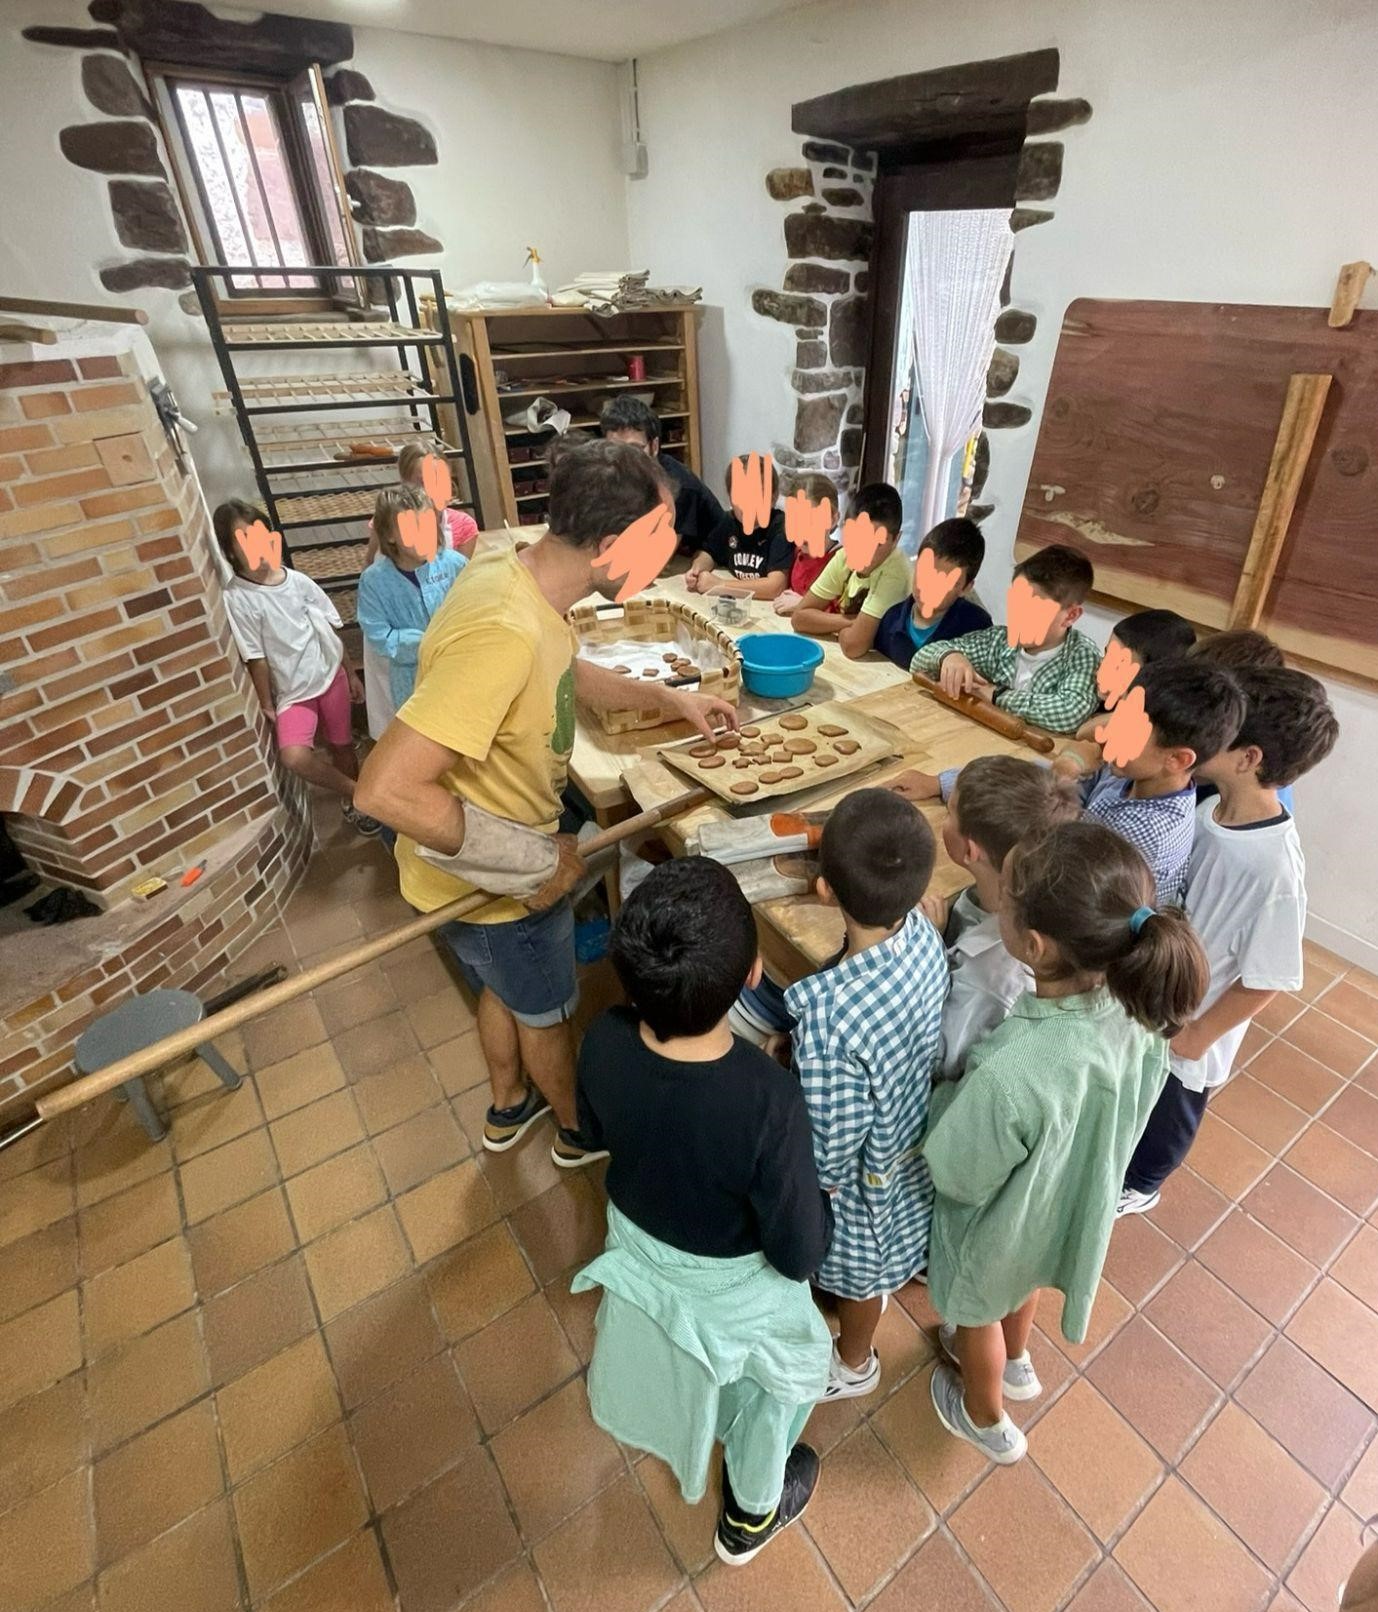 La escuela rural de Etxalar estudia sobre oficios de su pueblo en el obrador de pan